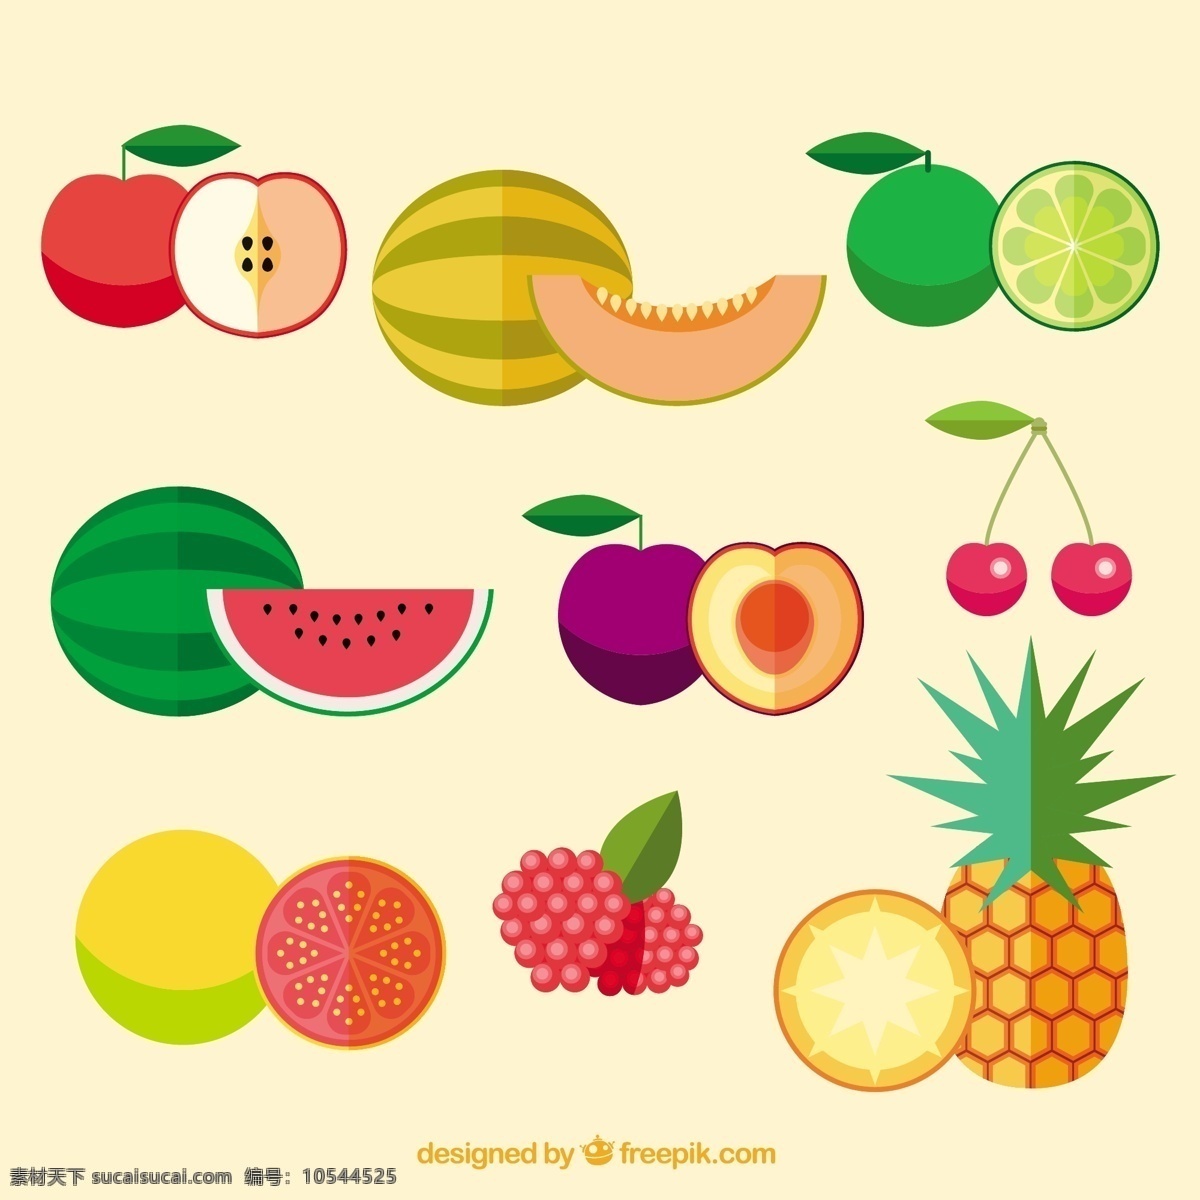 款 可口 扁平 水果 食品 红色 苹果 热带 平板 健康 平面设计 菠萝 健康食品 西瓜 营养 樱桃 甜瓜 美味 异国情调 红色水果